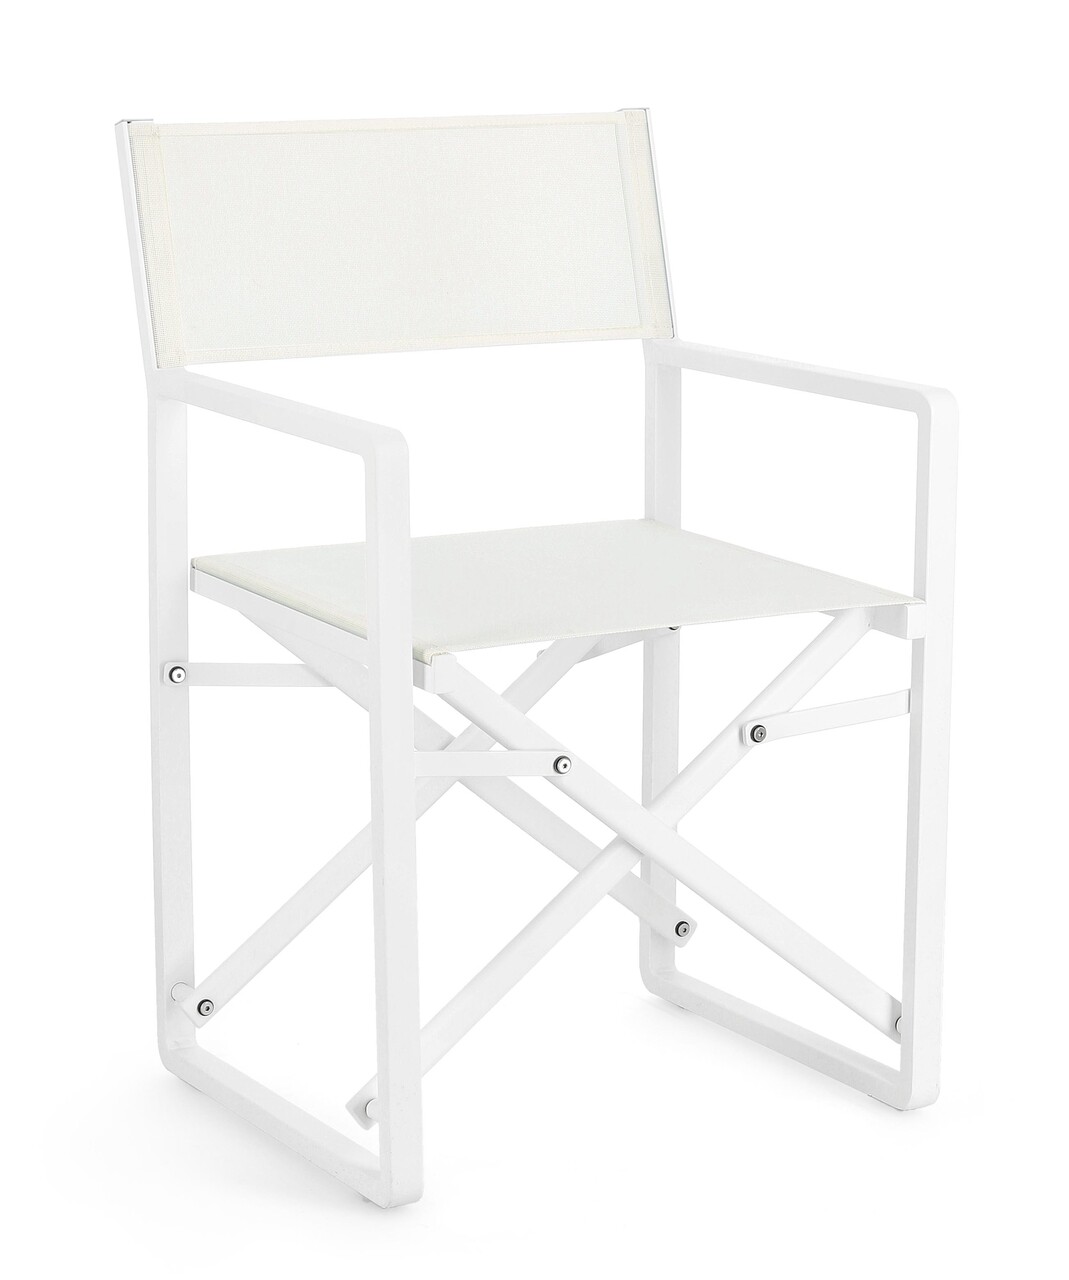 Konnor összecsukható kerti szék, bizzotto, 55 x 50.5 x 84.5 cm, alumínium/textilén 1x1, fehér